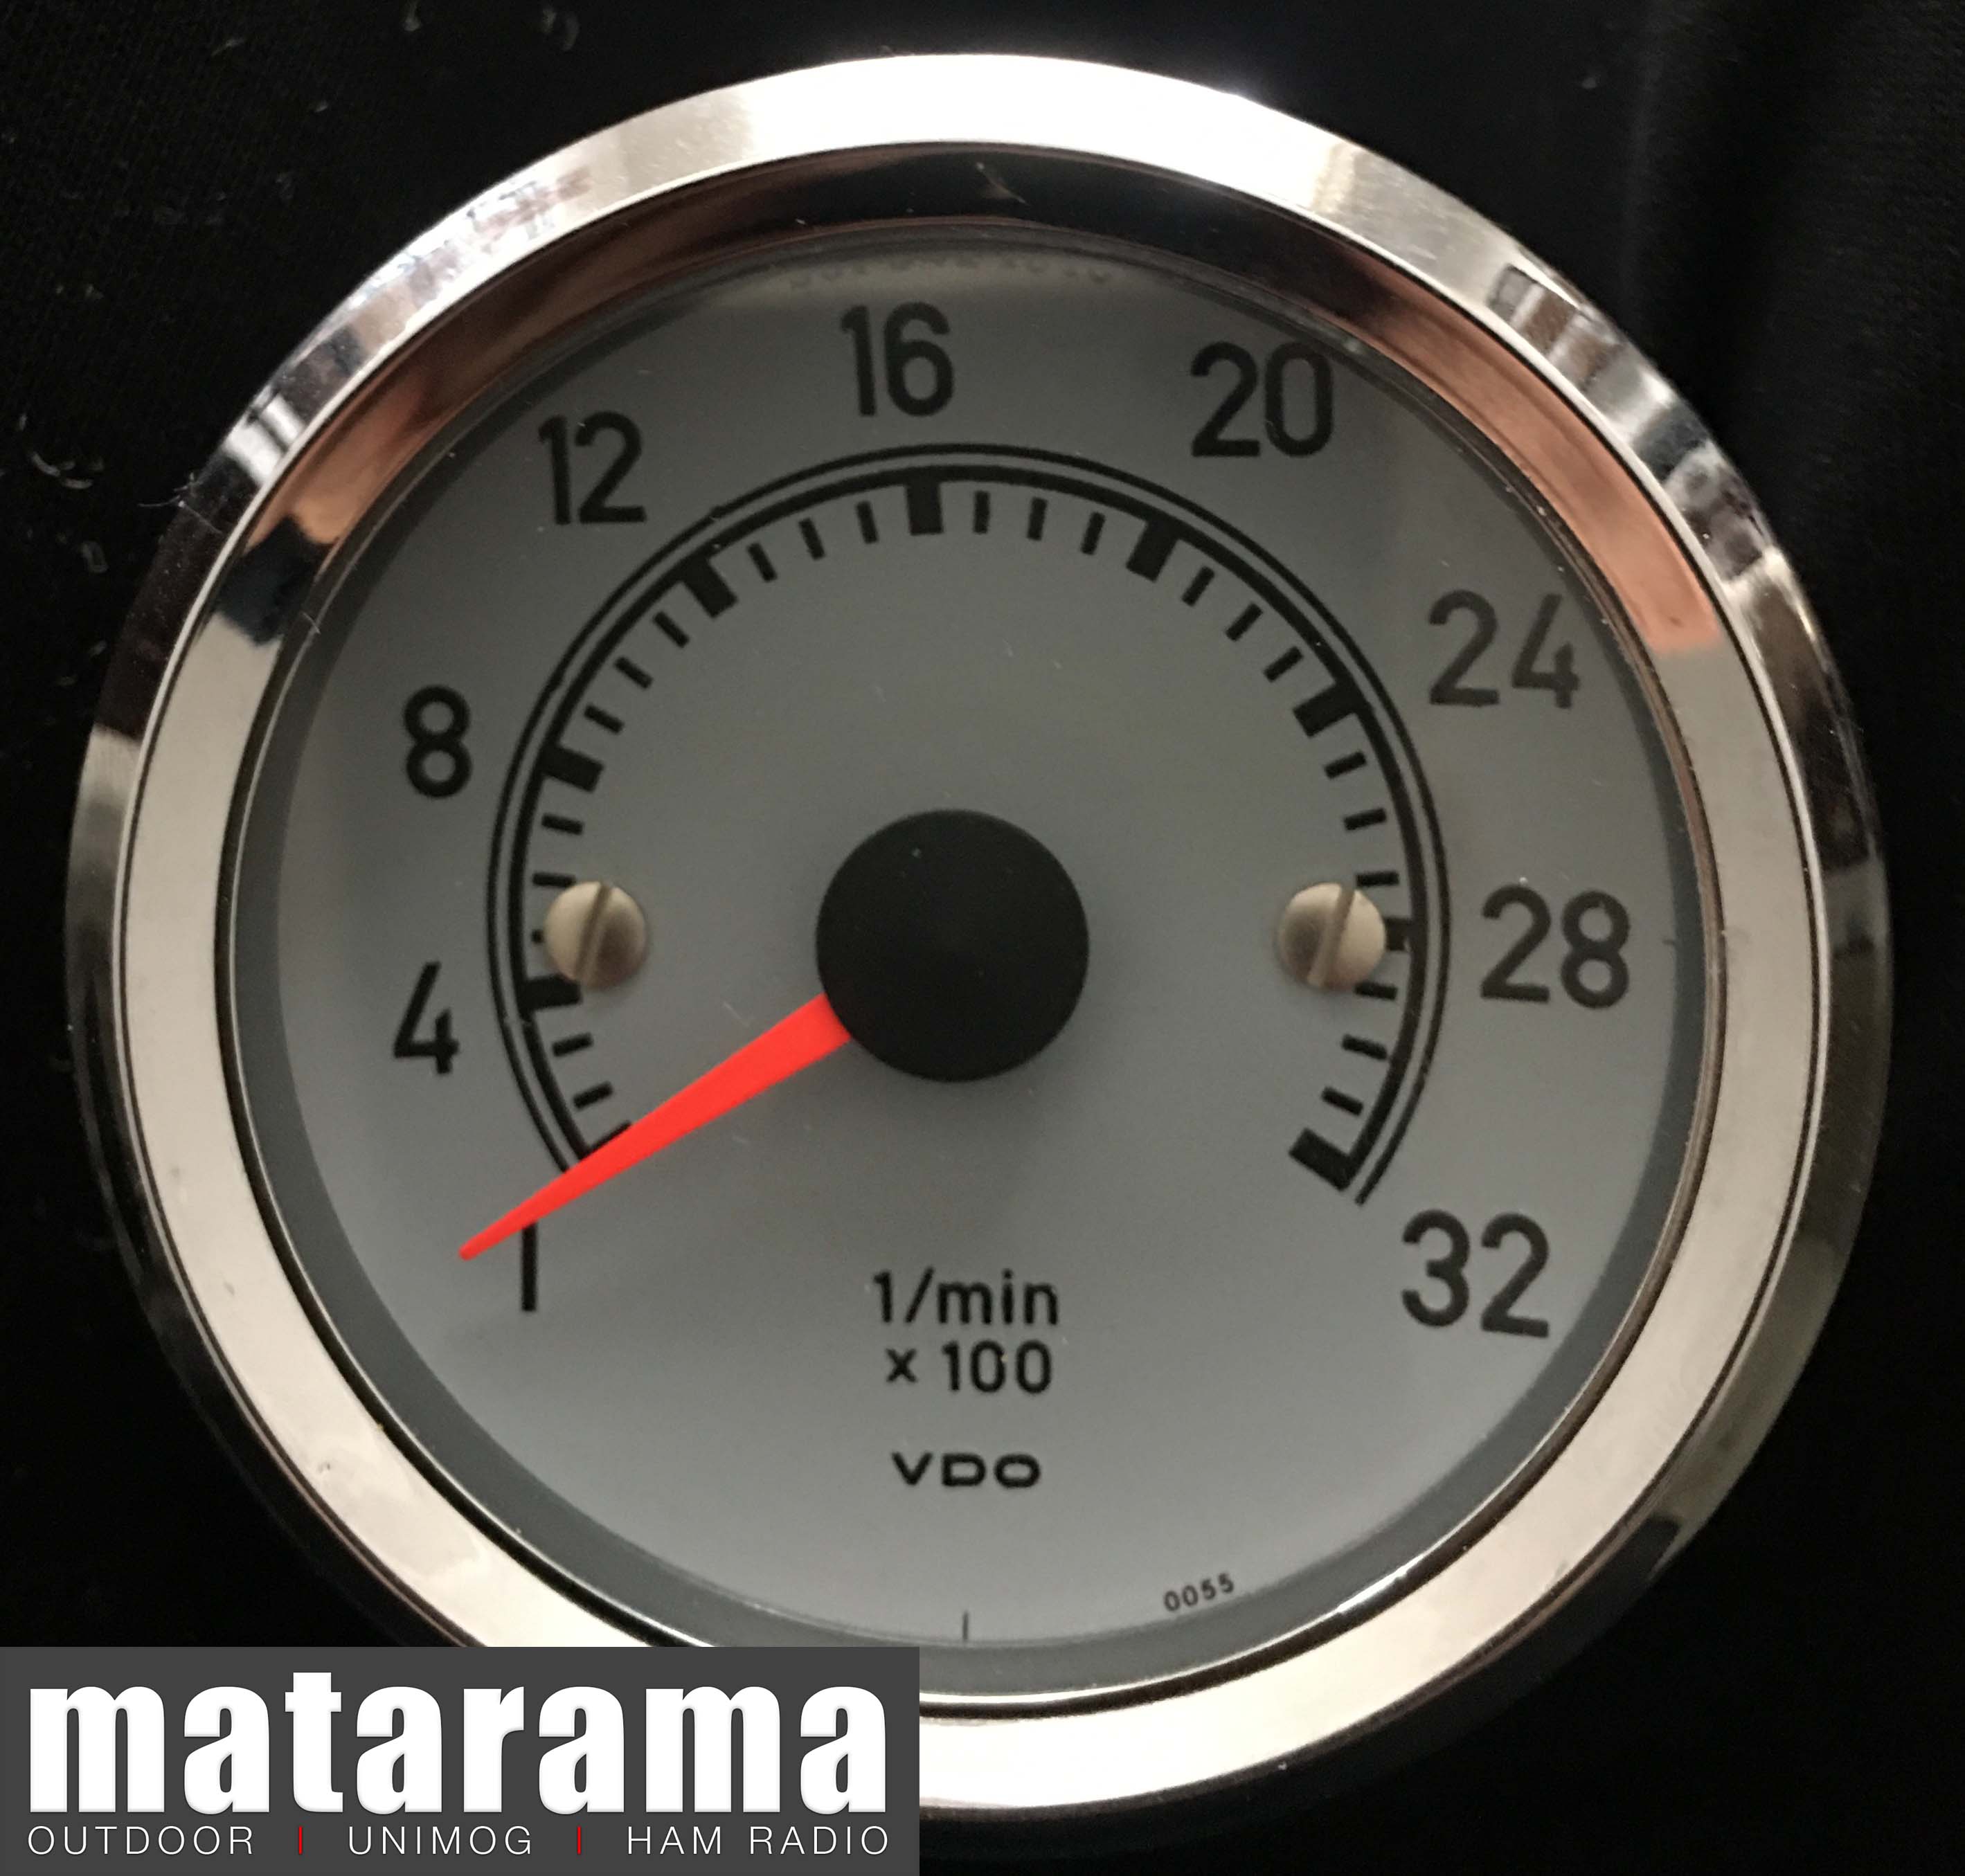 Unimog 406-416-419 VDO tachometer (rev counter) 01 matarama_com